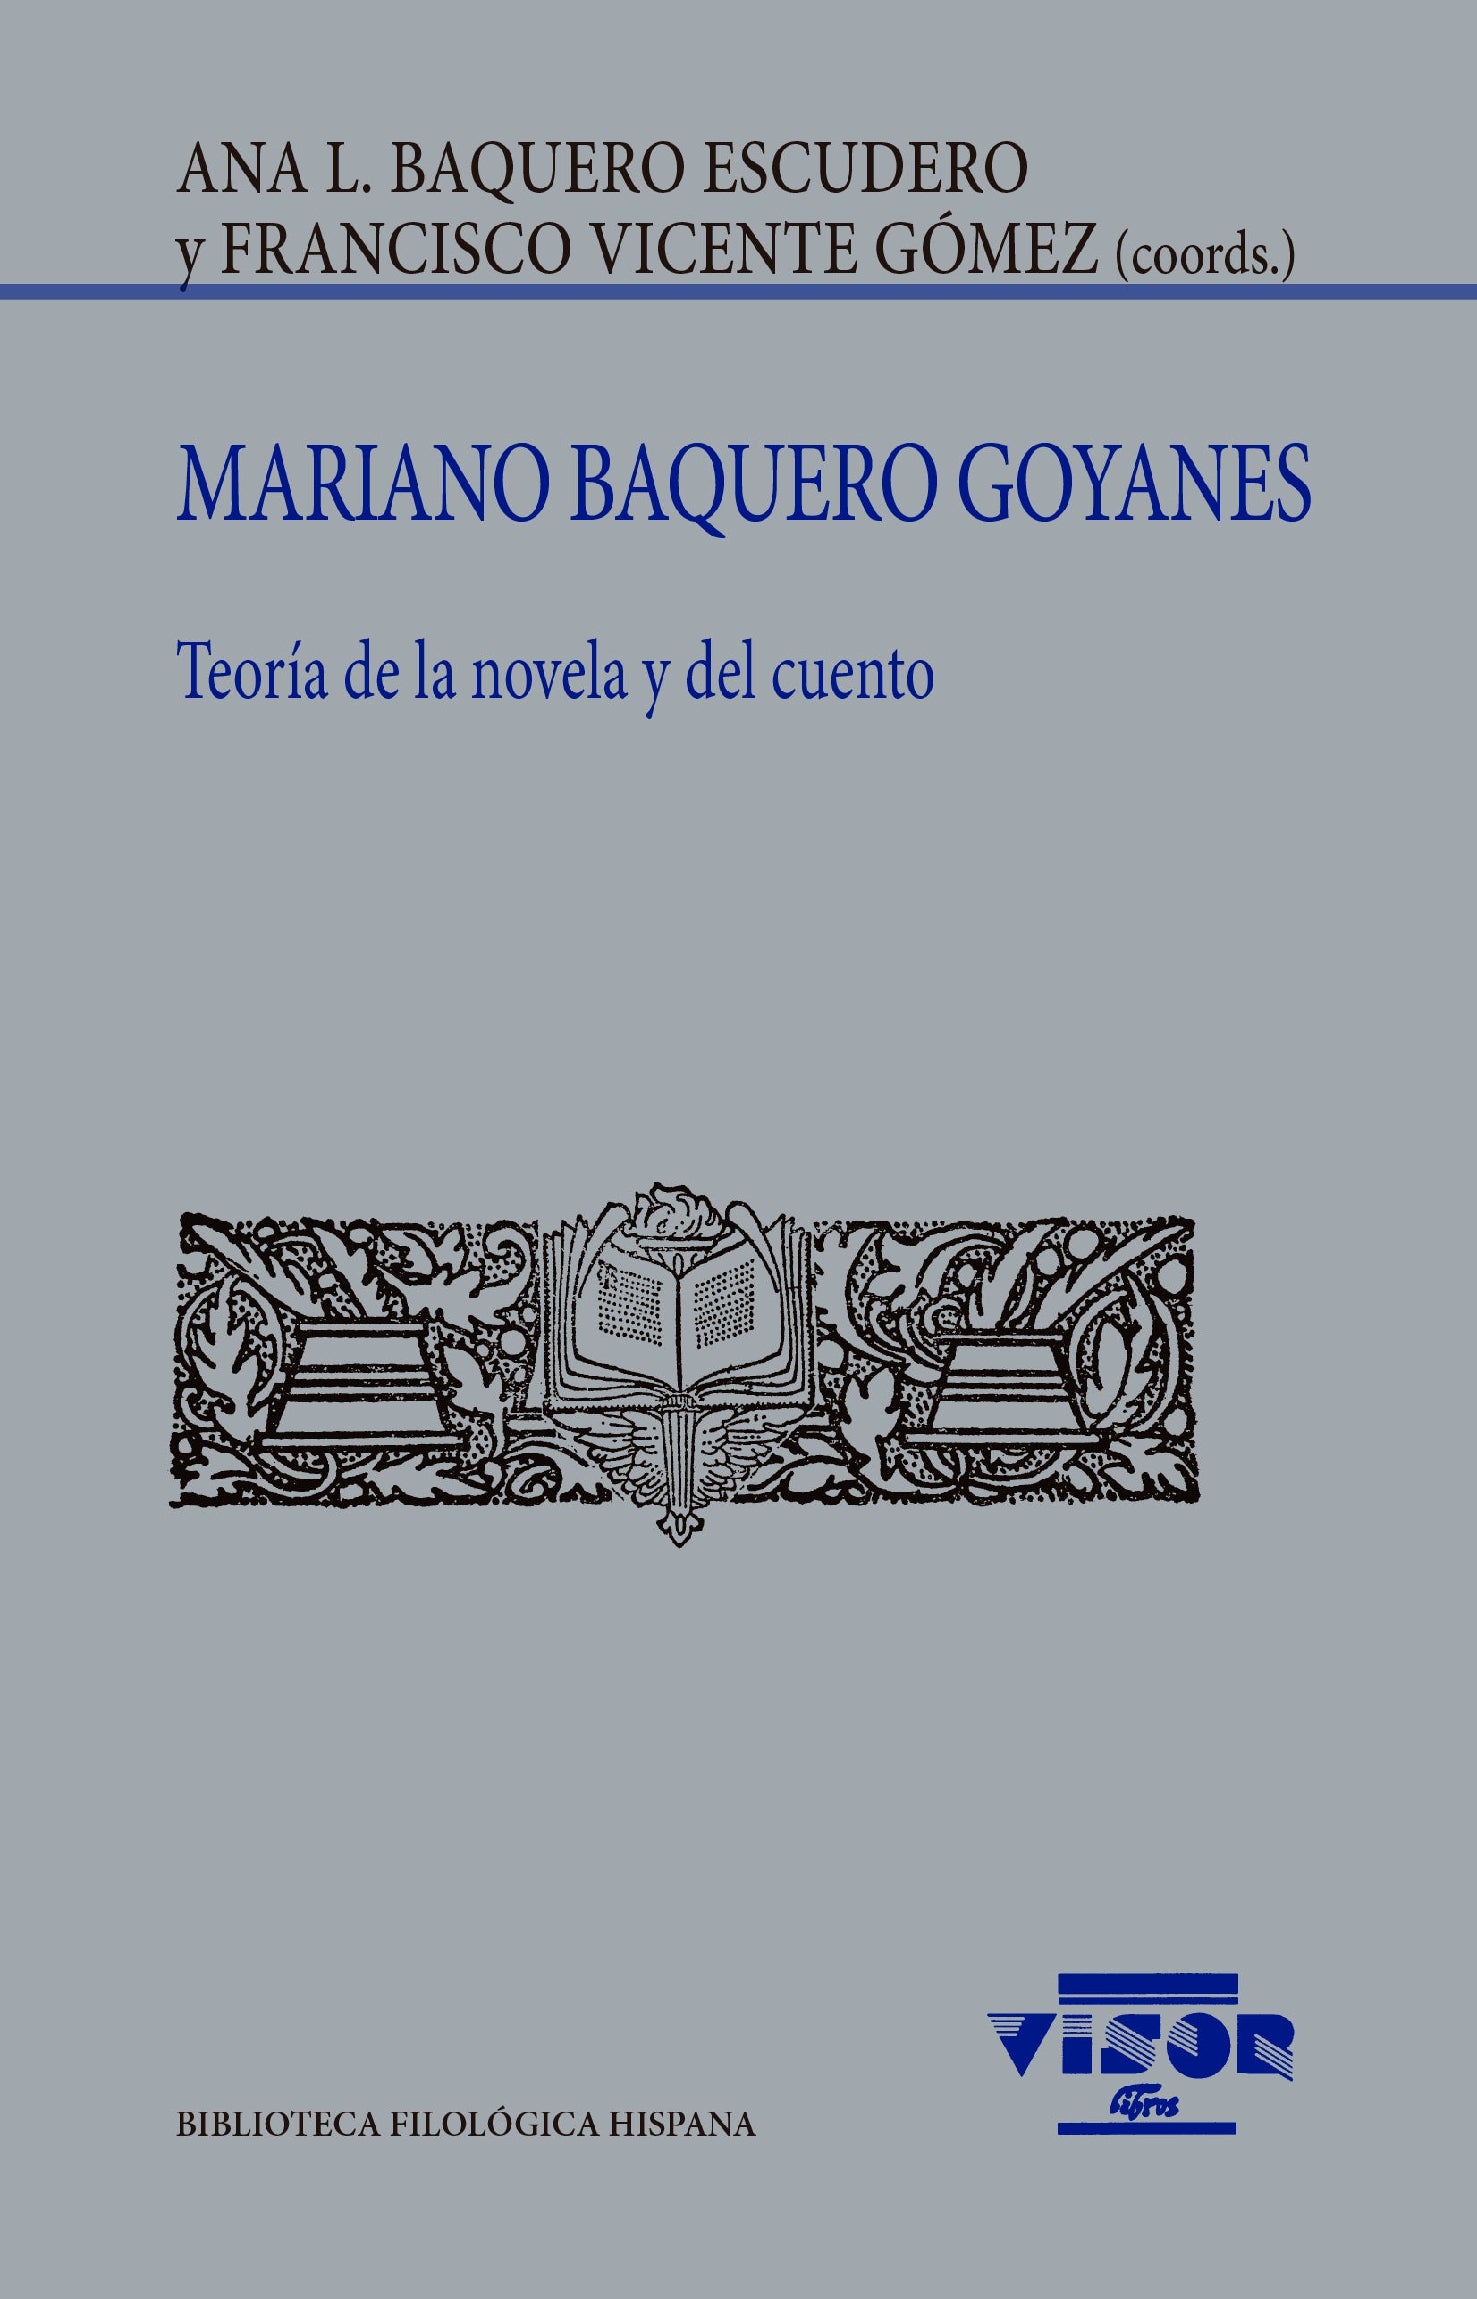 Mariano Baquero Goyanes